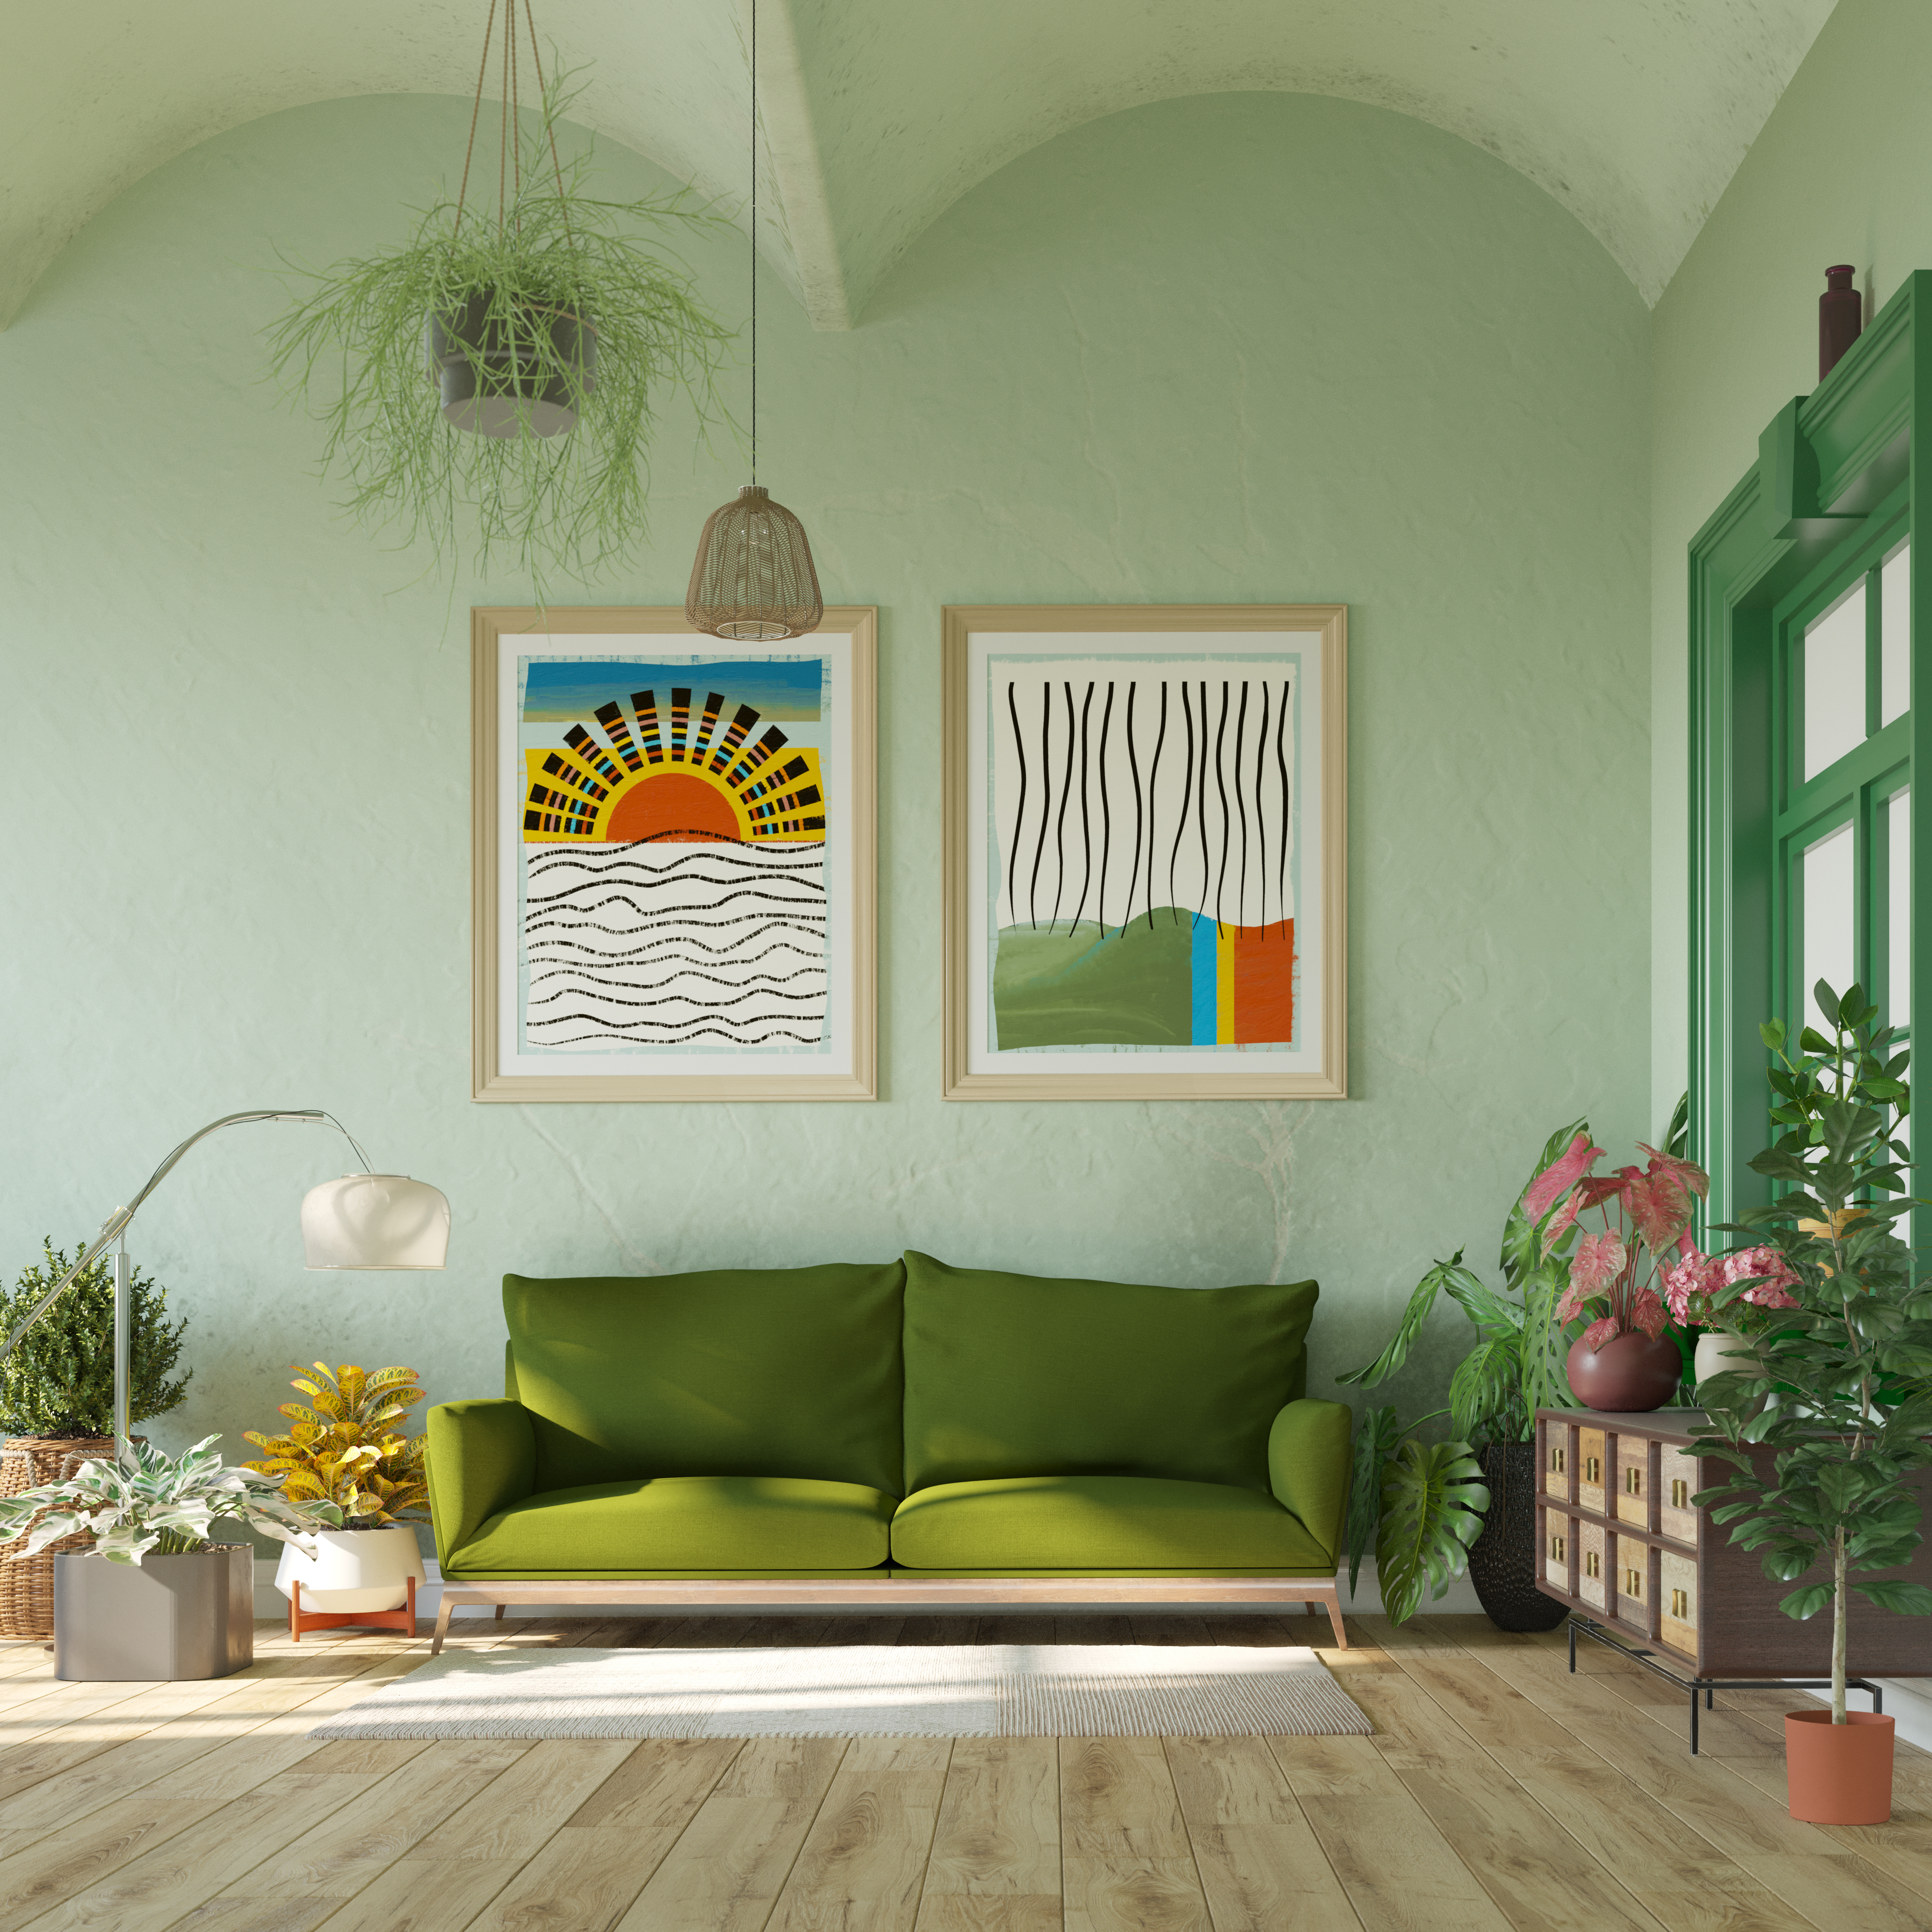 Una habitación con obras de arte enmarcadas | Foto: Getty Images